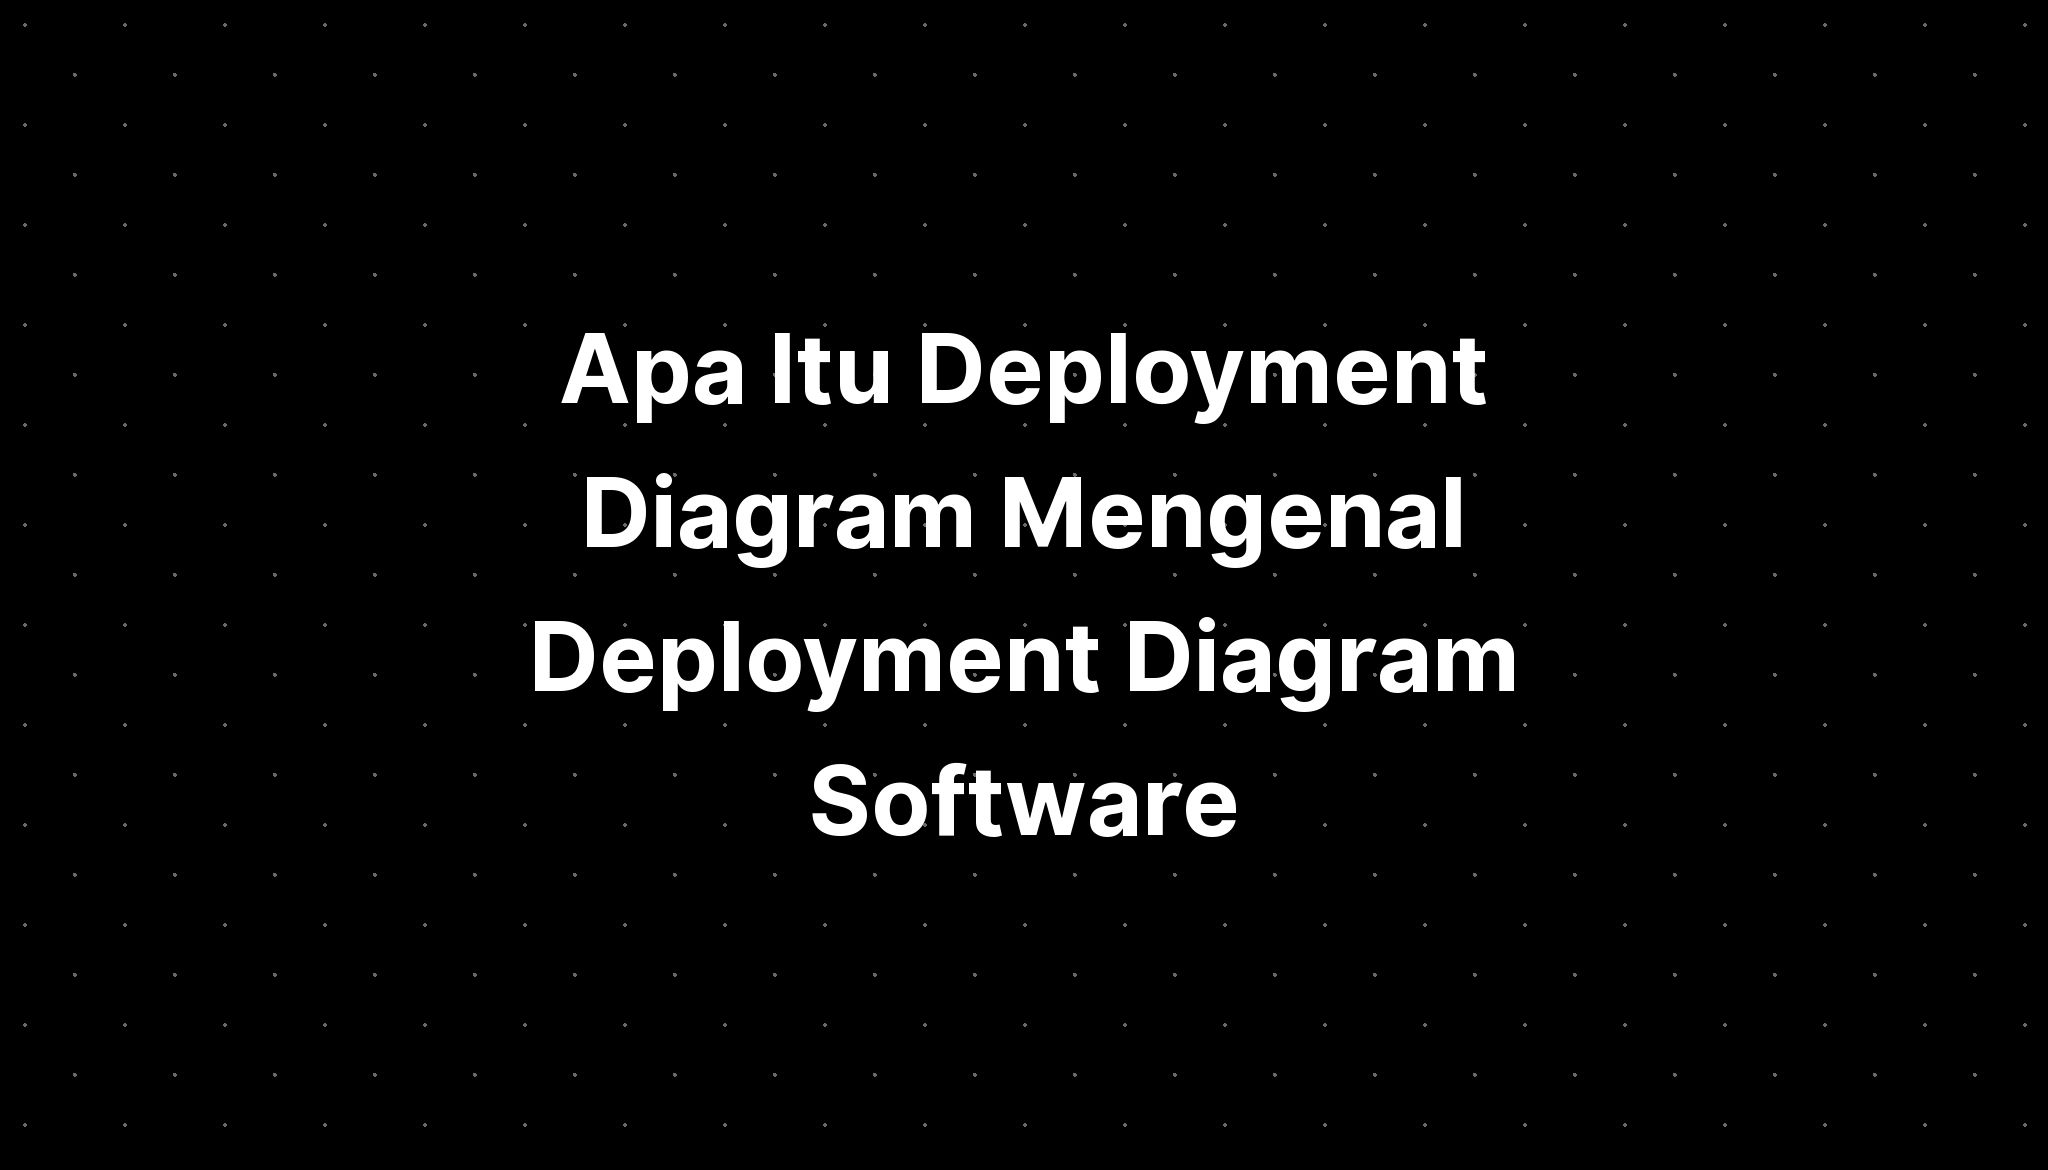 Apa Itu Deployment Diagram Mengenal Deployment Diagram Software Imagesee